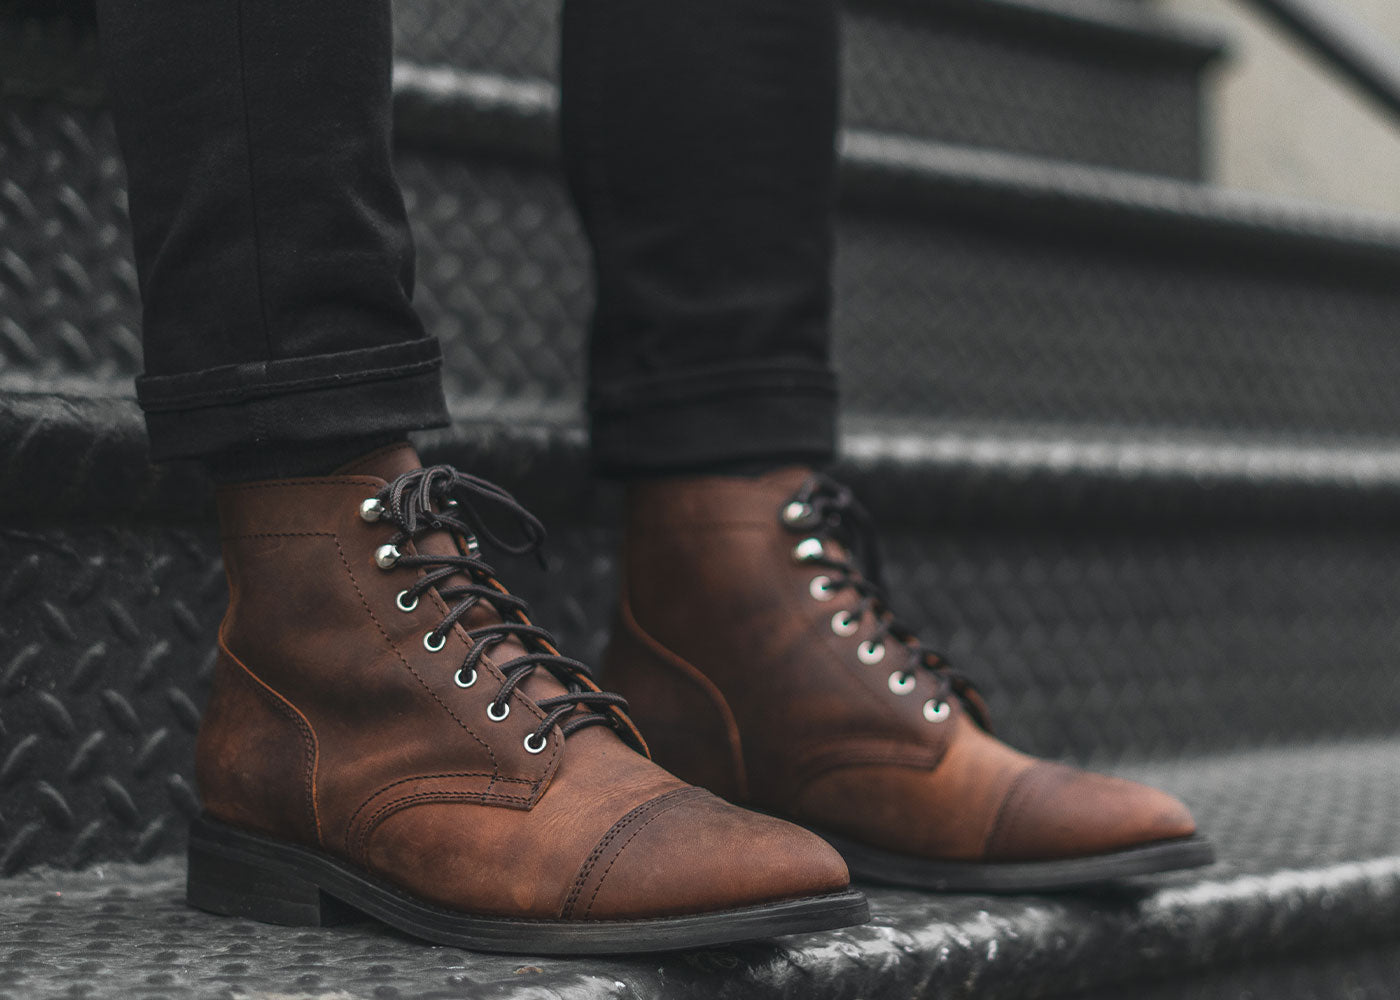 Men's Footwear, Boots, Shoes & Sandals